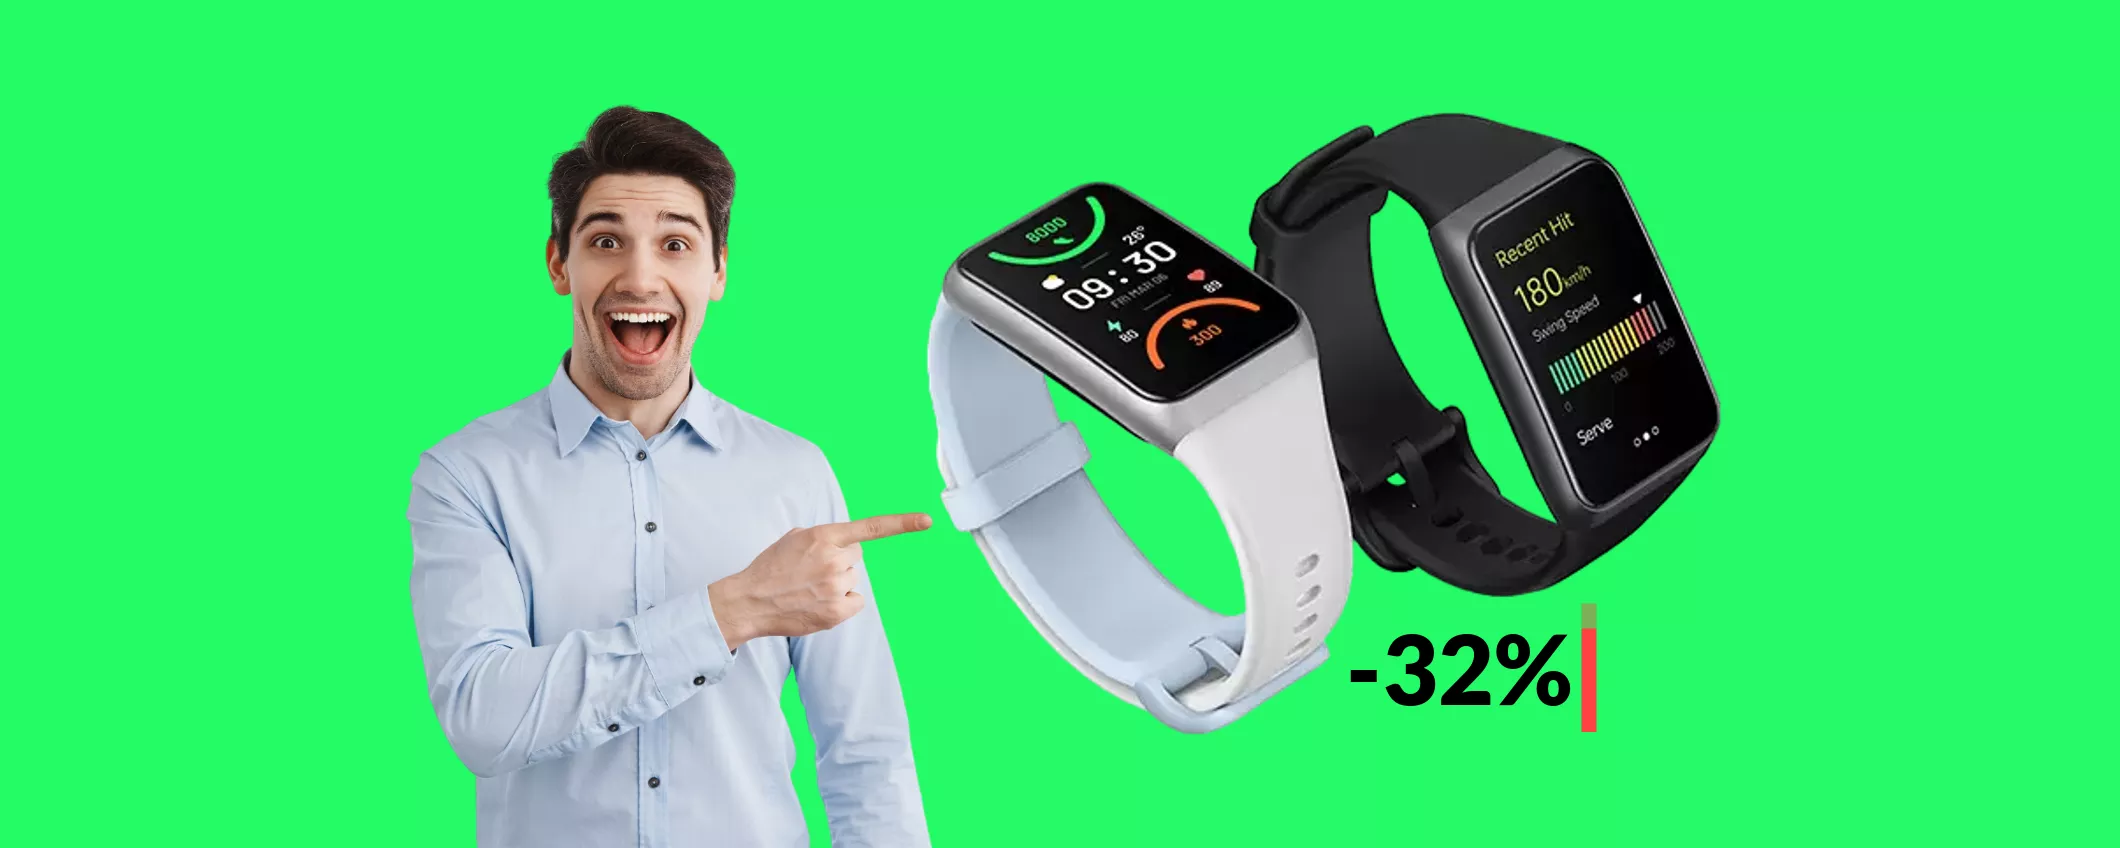 Smartwatch Oppo a soli 47€: ottimo per monitorare fitness e salute